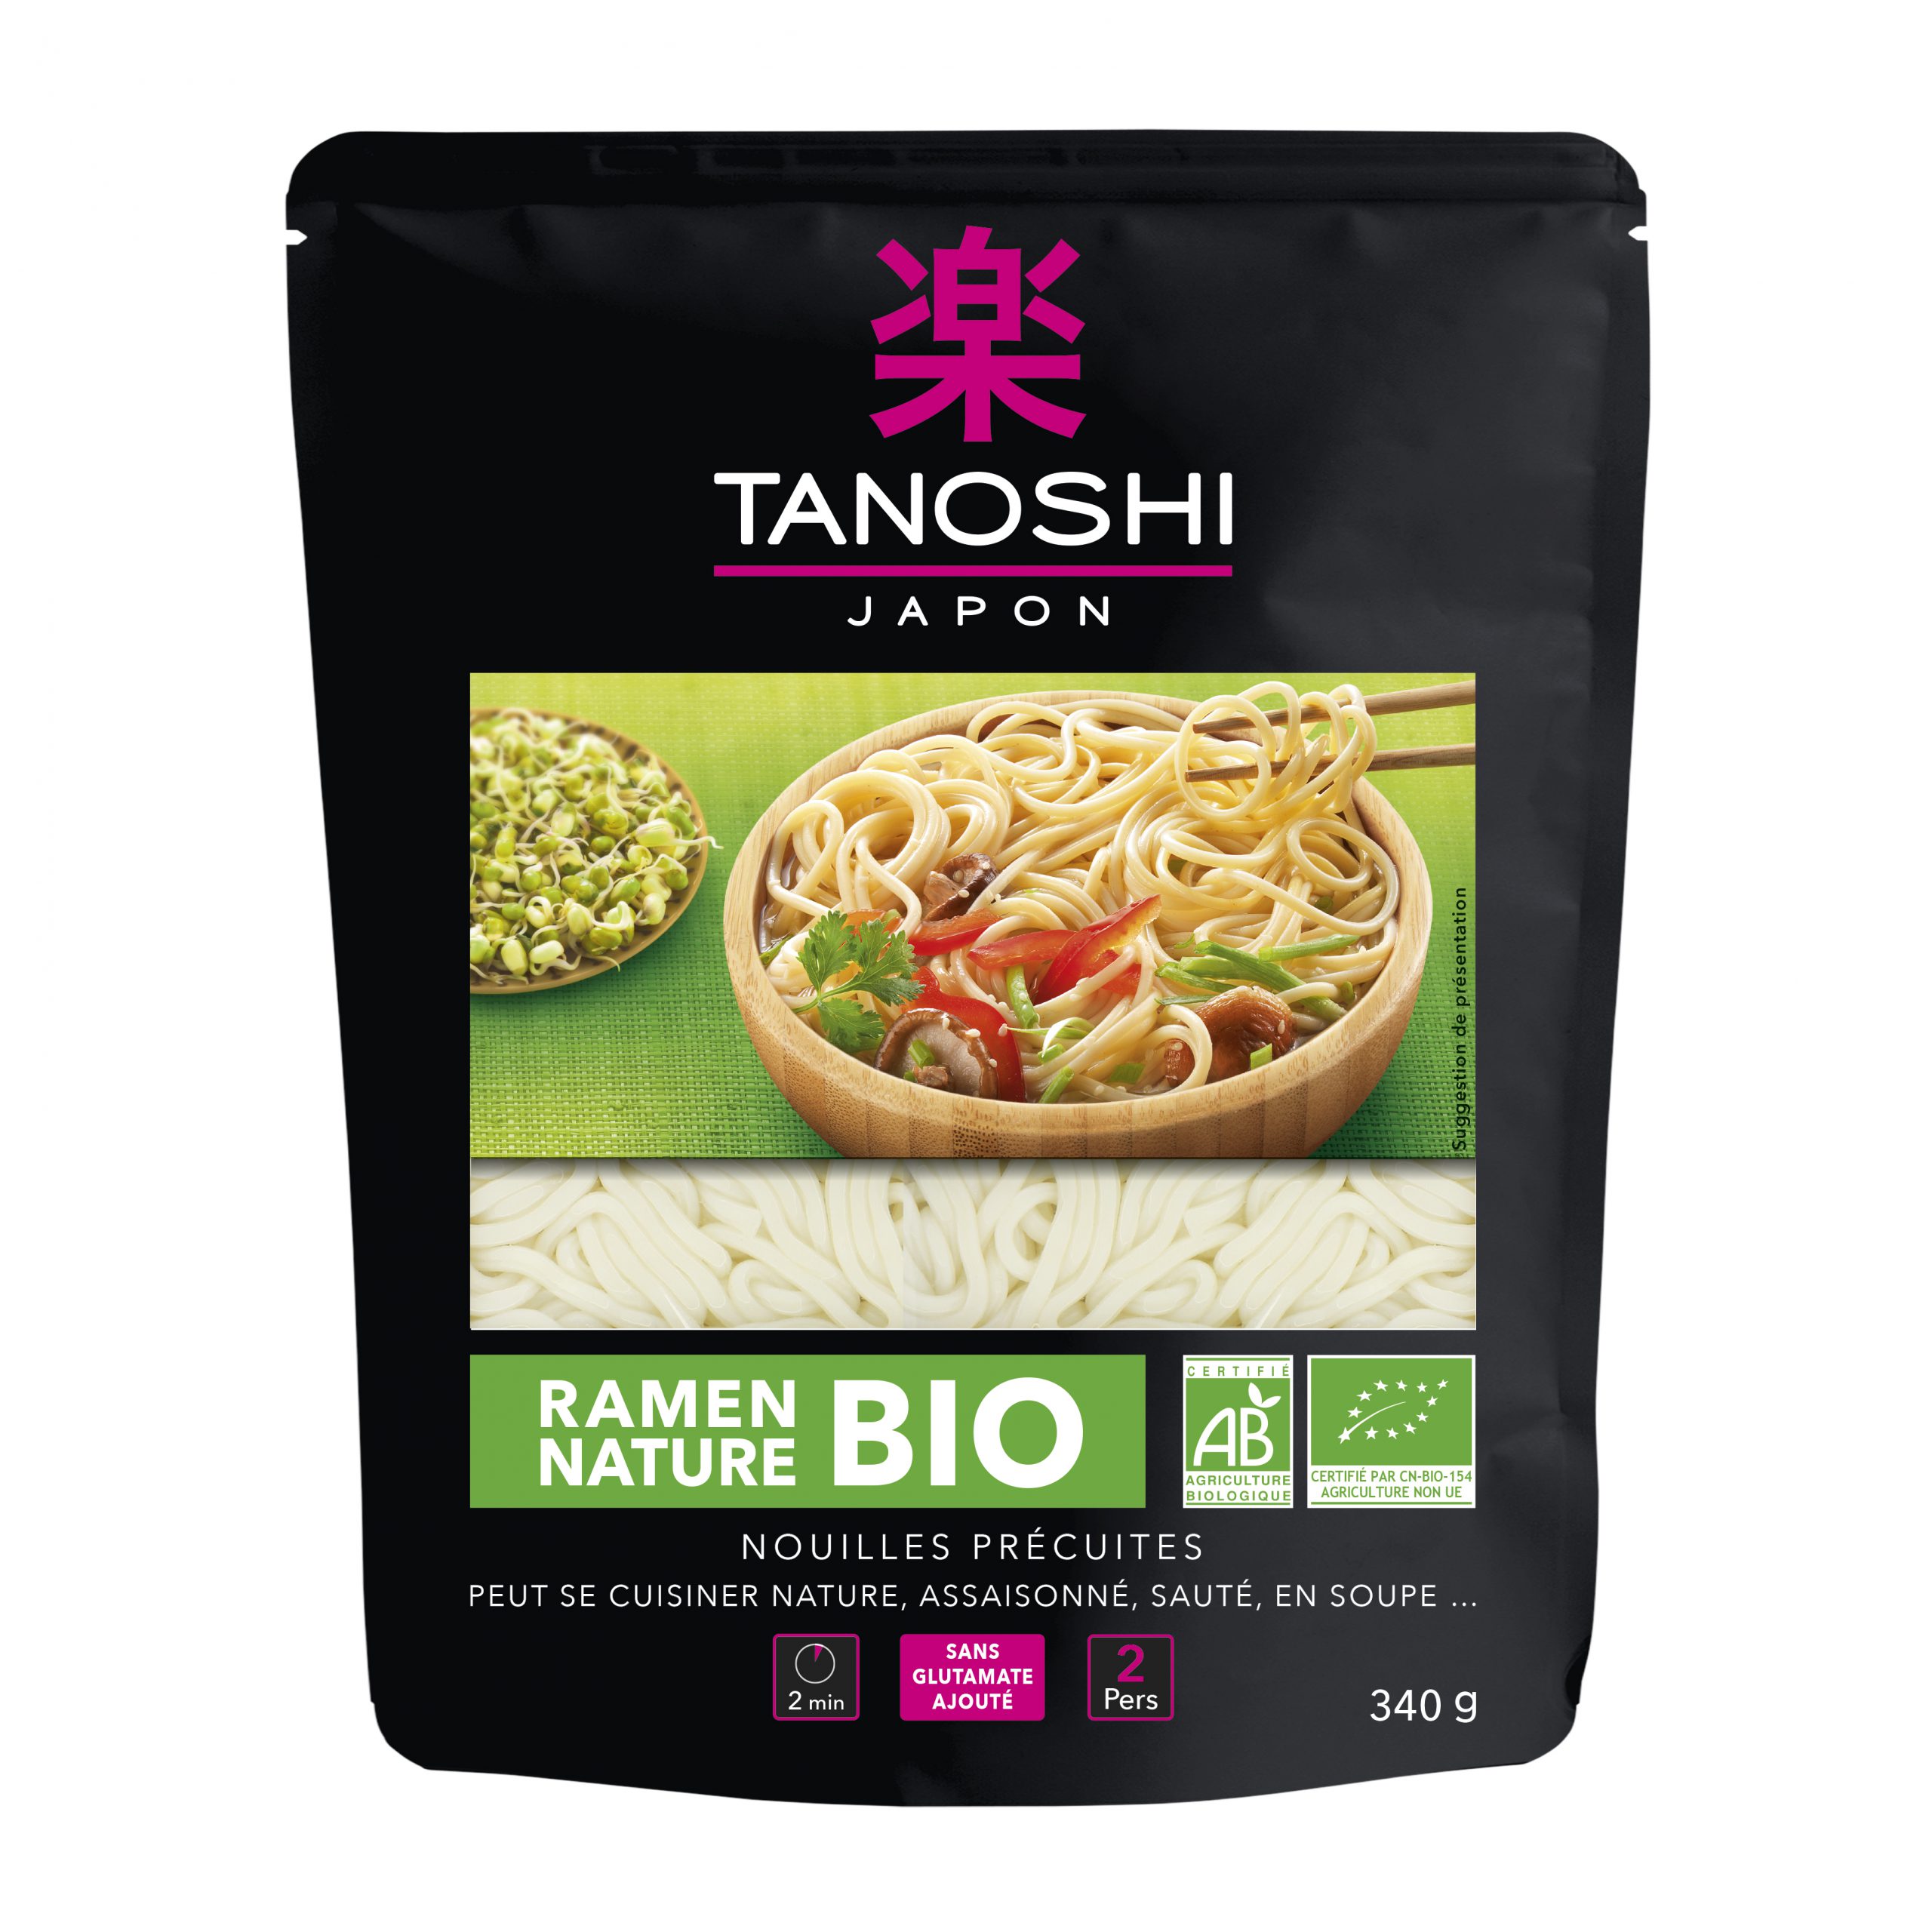 Tanoshi lance deux nouvelles recettes de nouilles